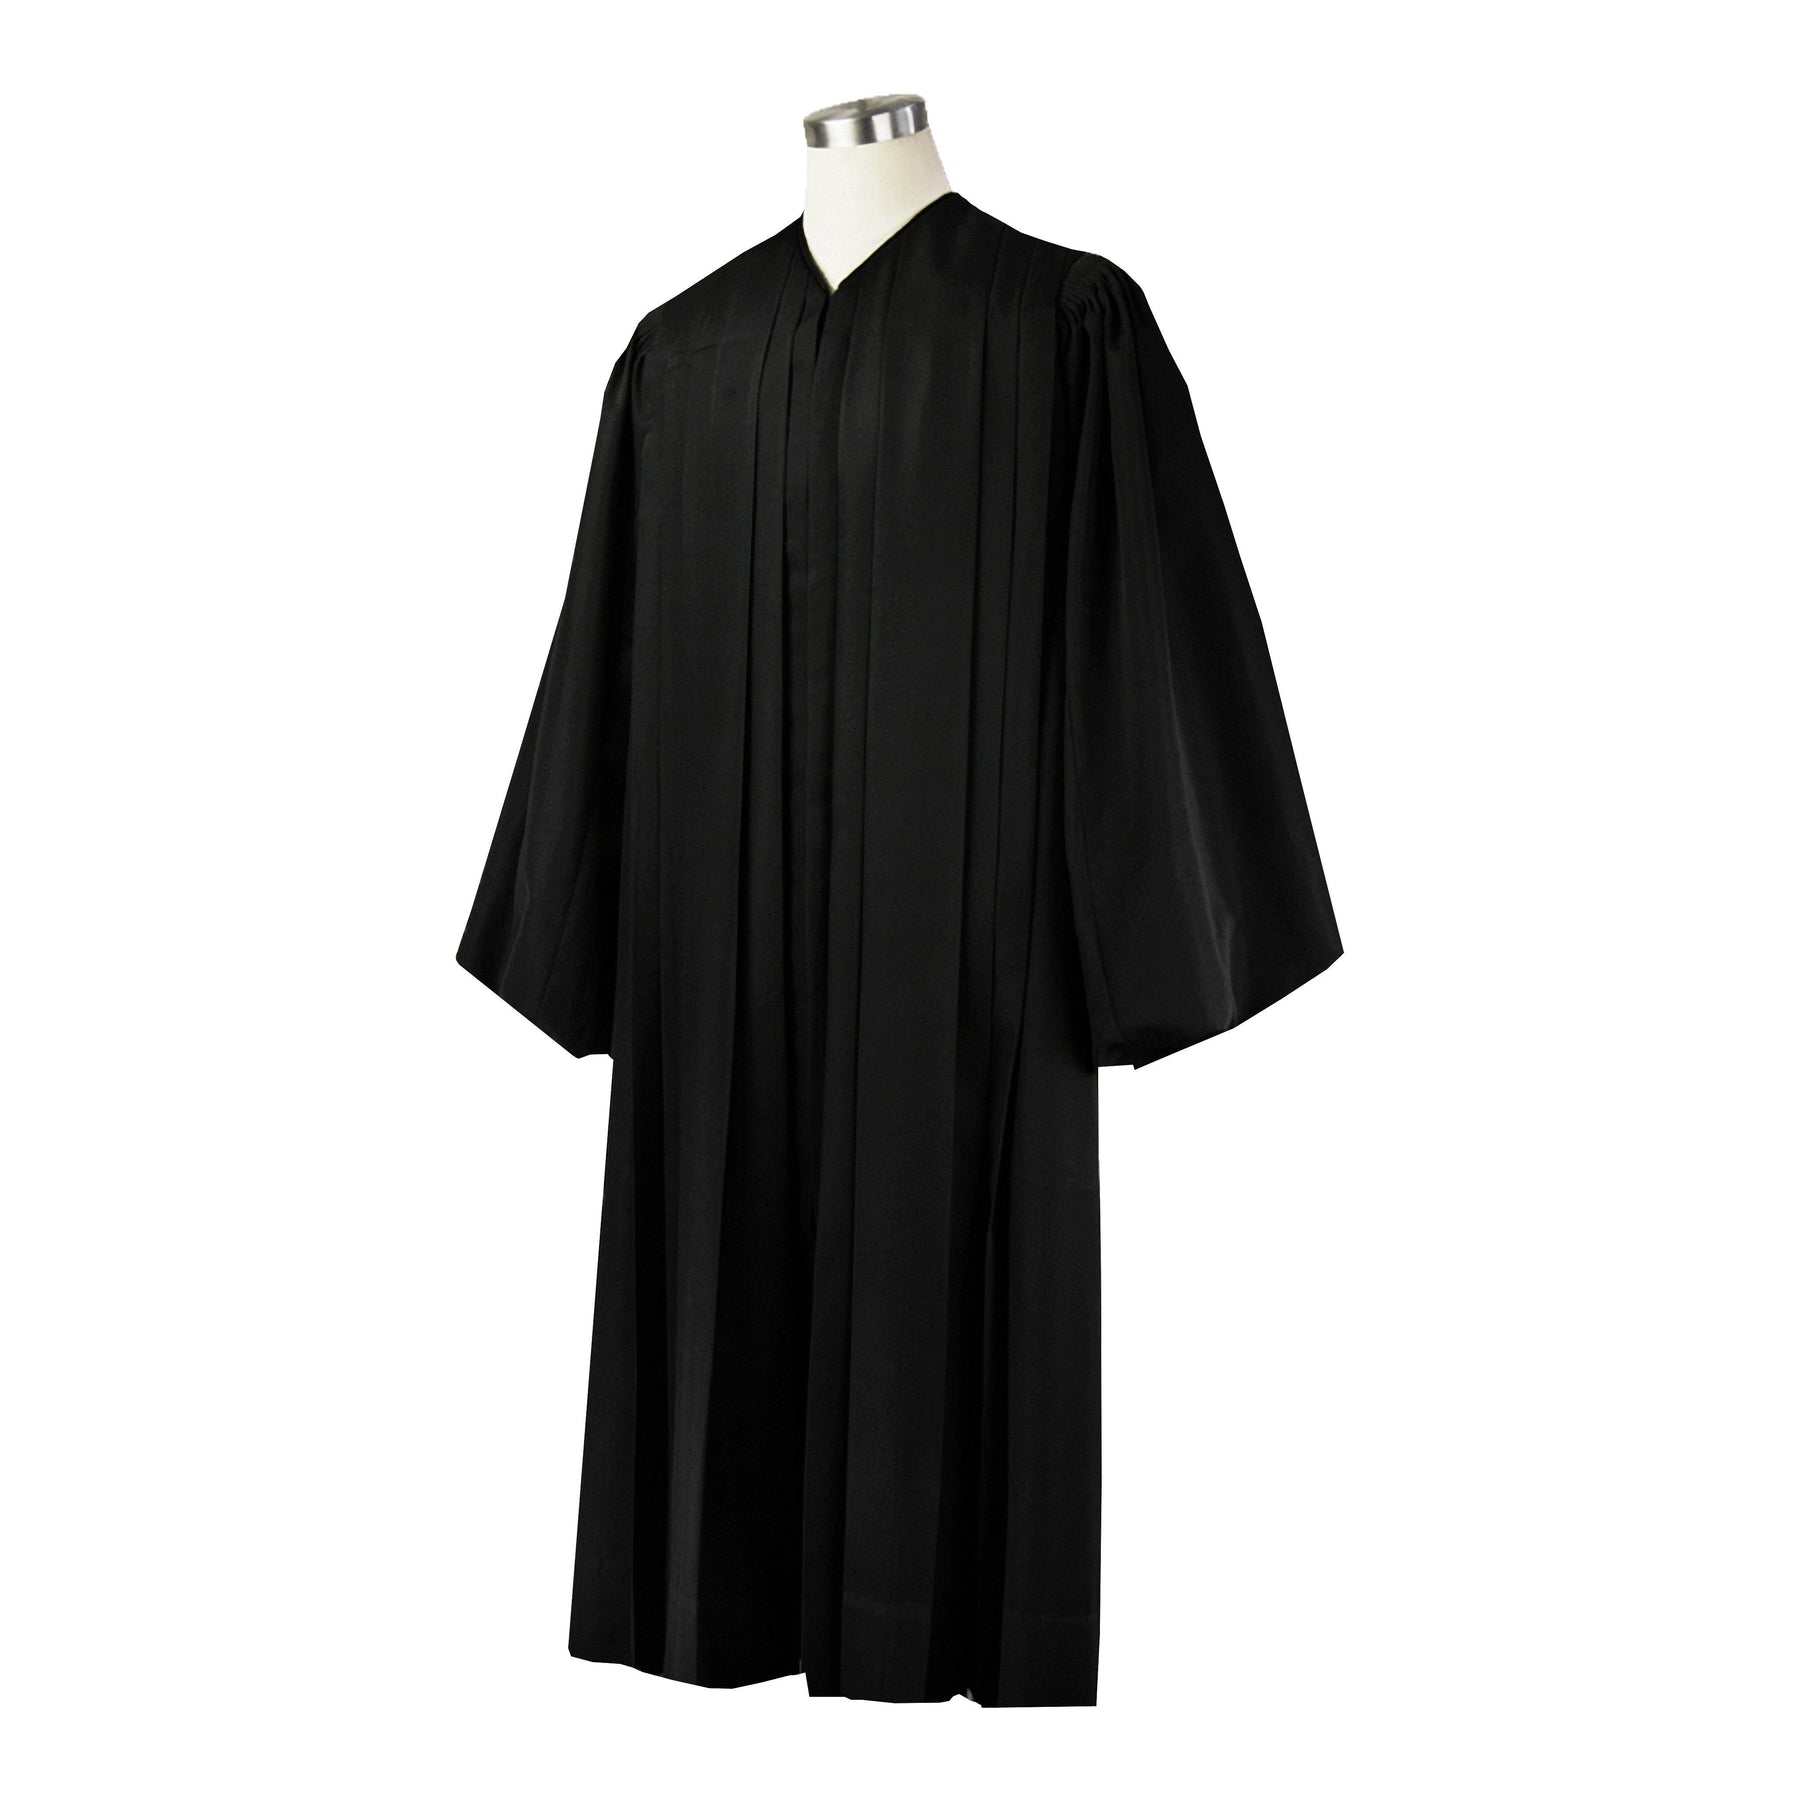 Juristic Judge Robe – Judicial Shop